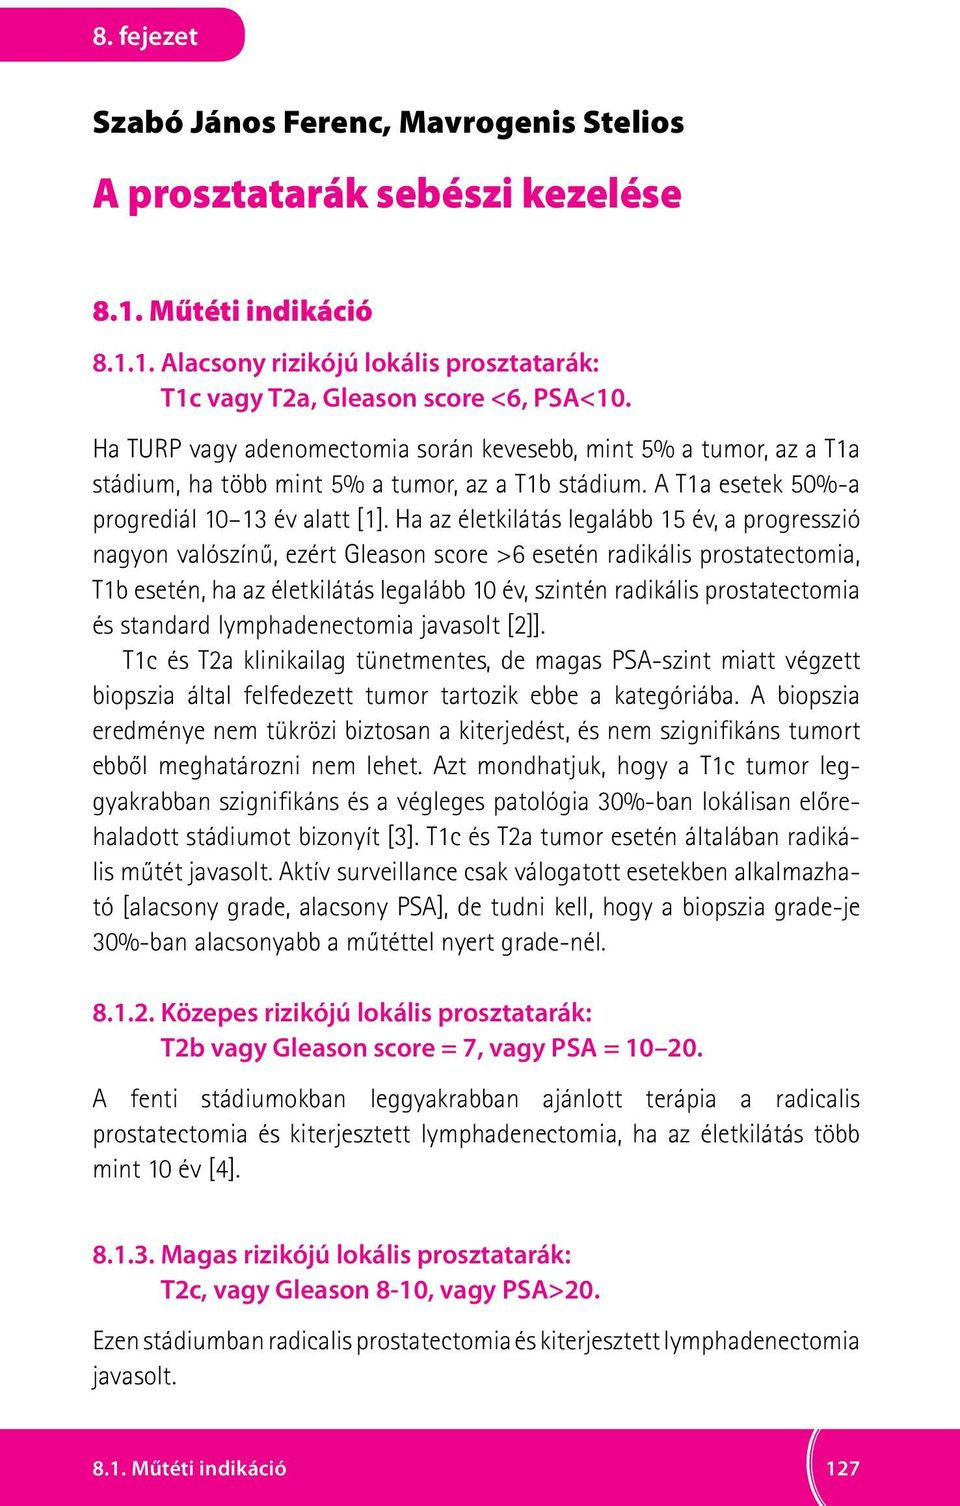 prostatectomia jelentése - Tudományos és Köznyelvi Szavak Magyar Értelmező Szótára